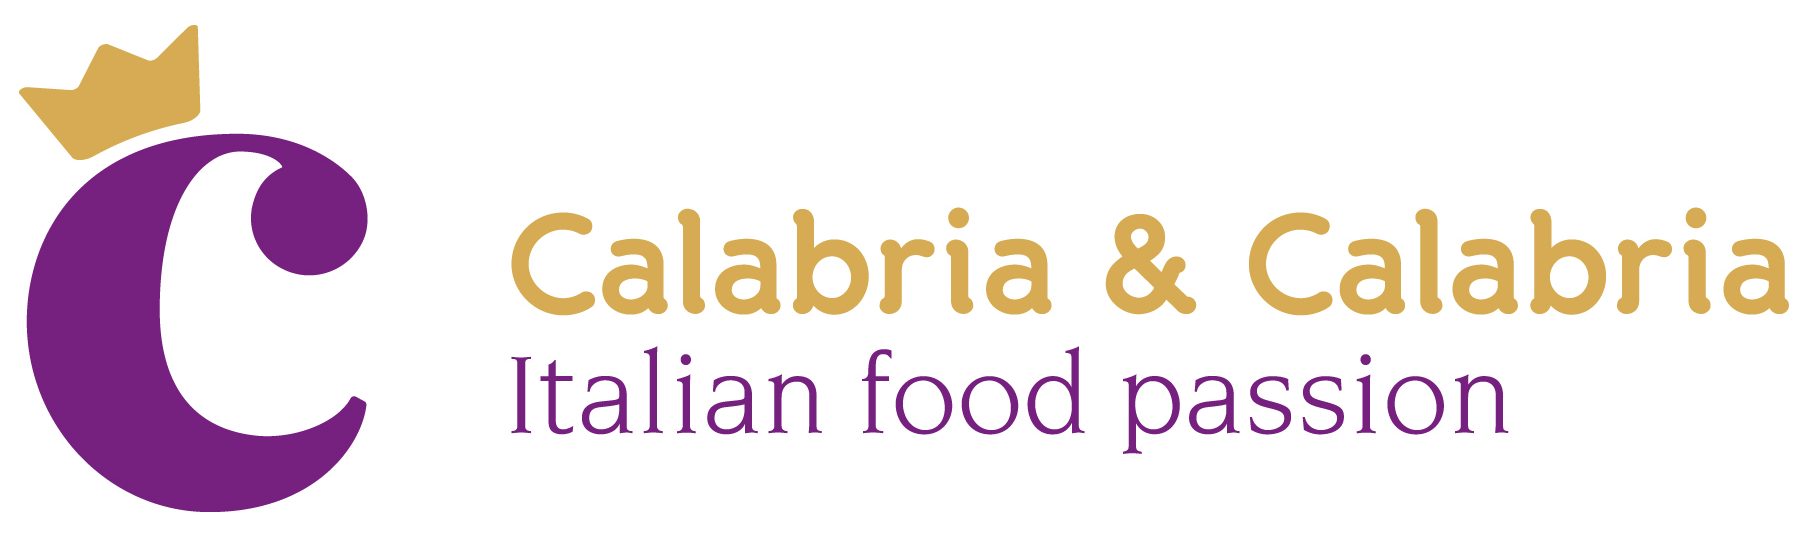 Calabria e Calabria Italian food passion